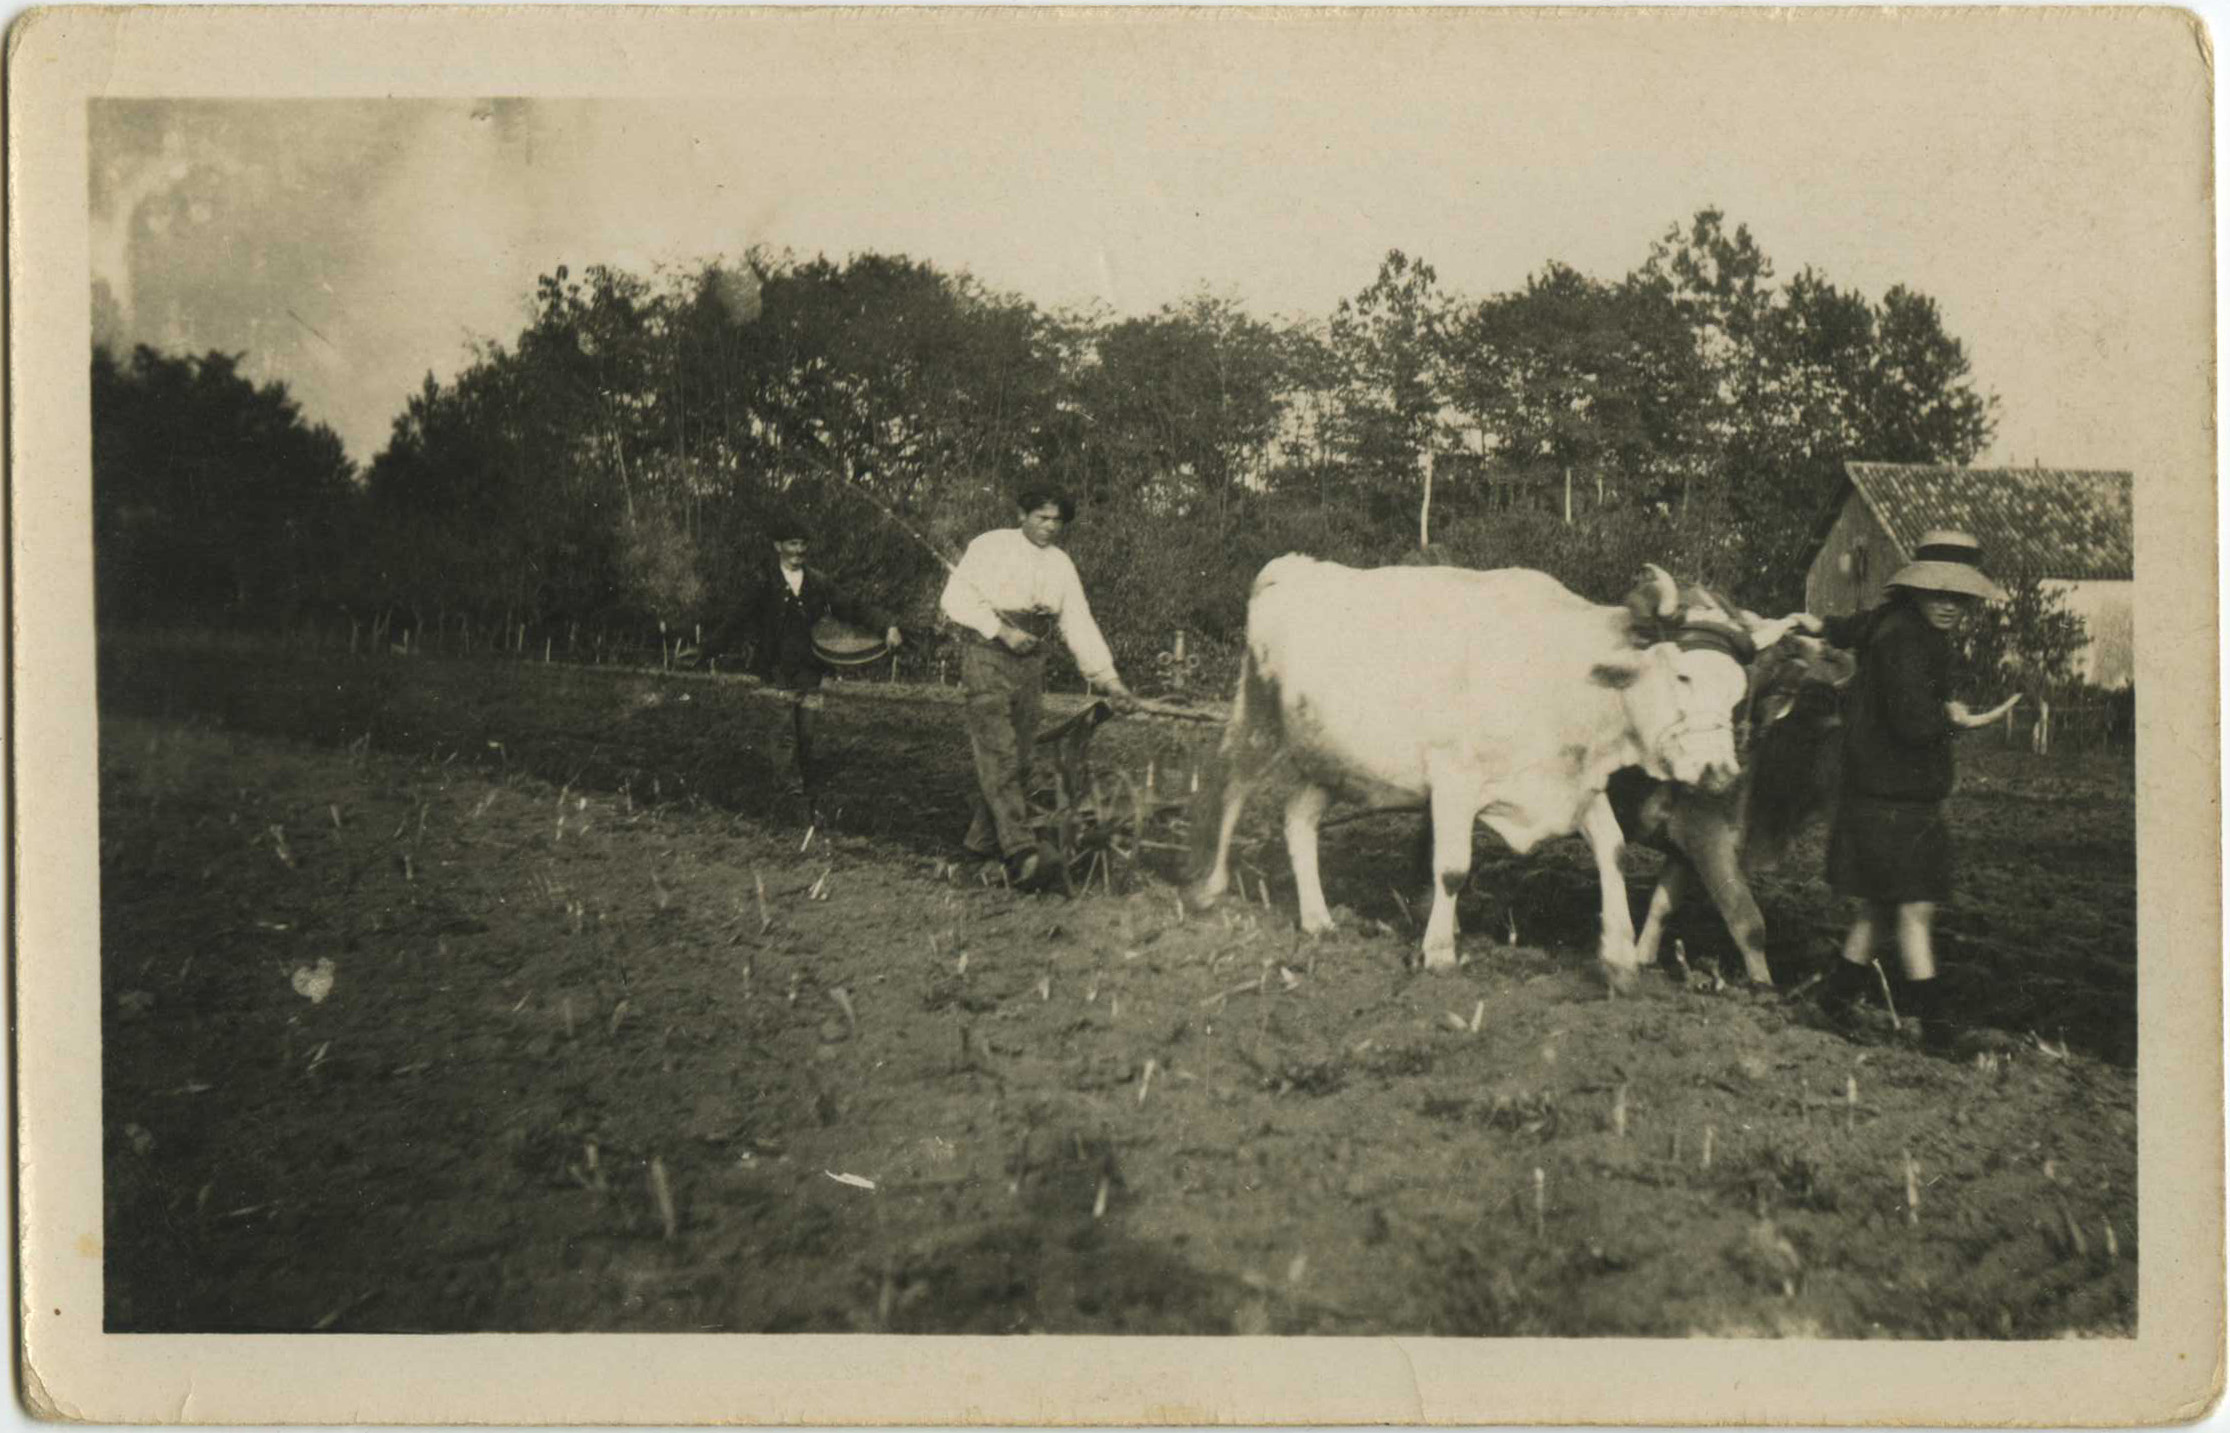 Landes - Carte photo - Travaux dans les champs (vers 1917-1919)